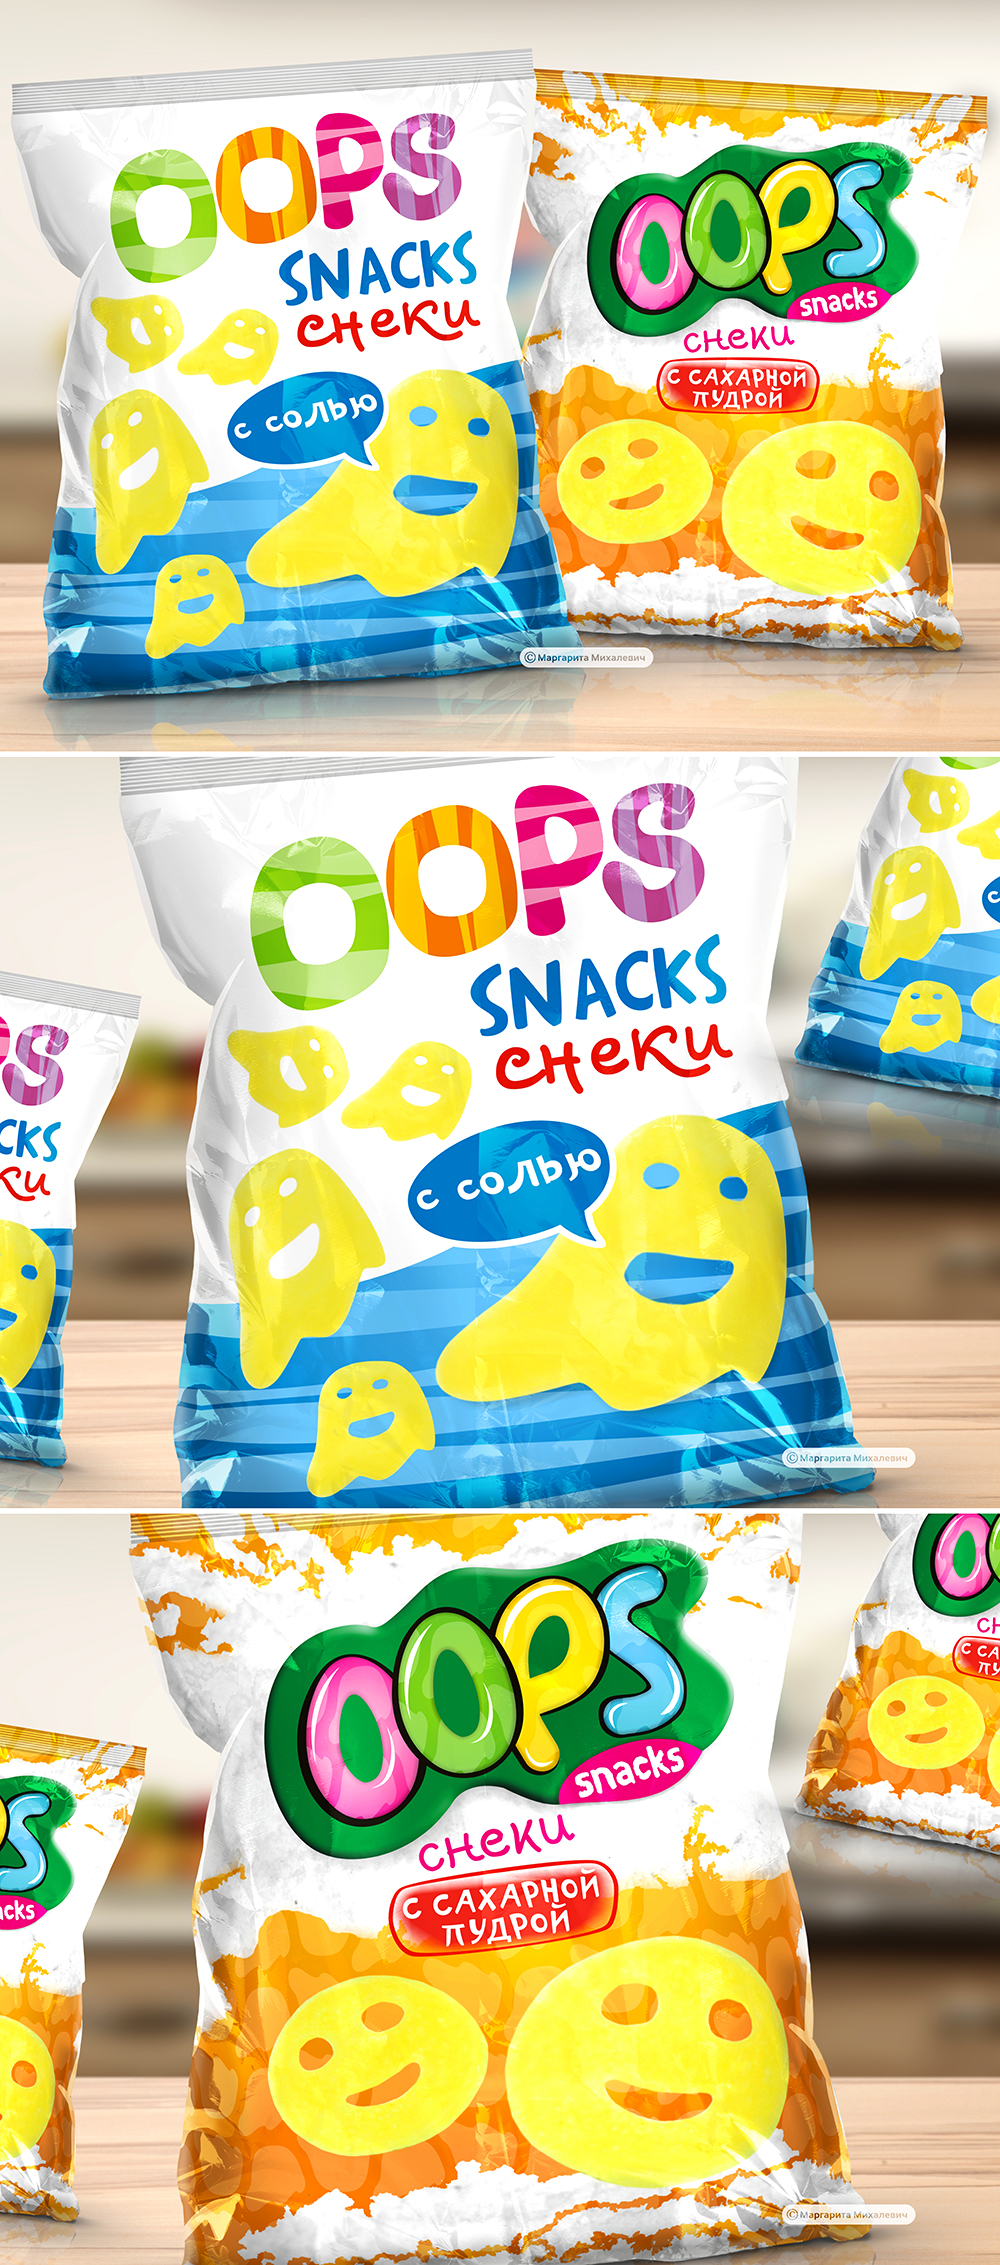  , ,      "OOPS-snacks"